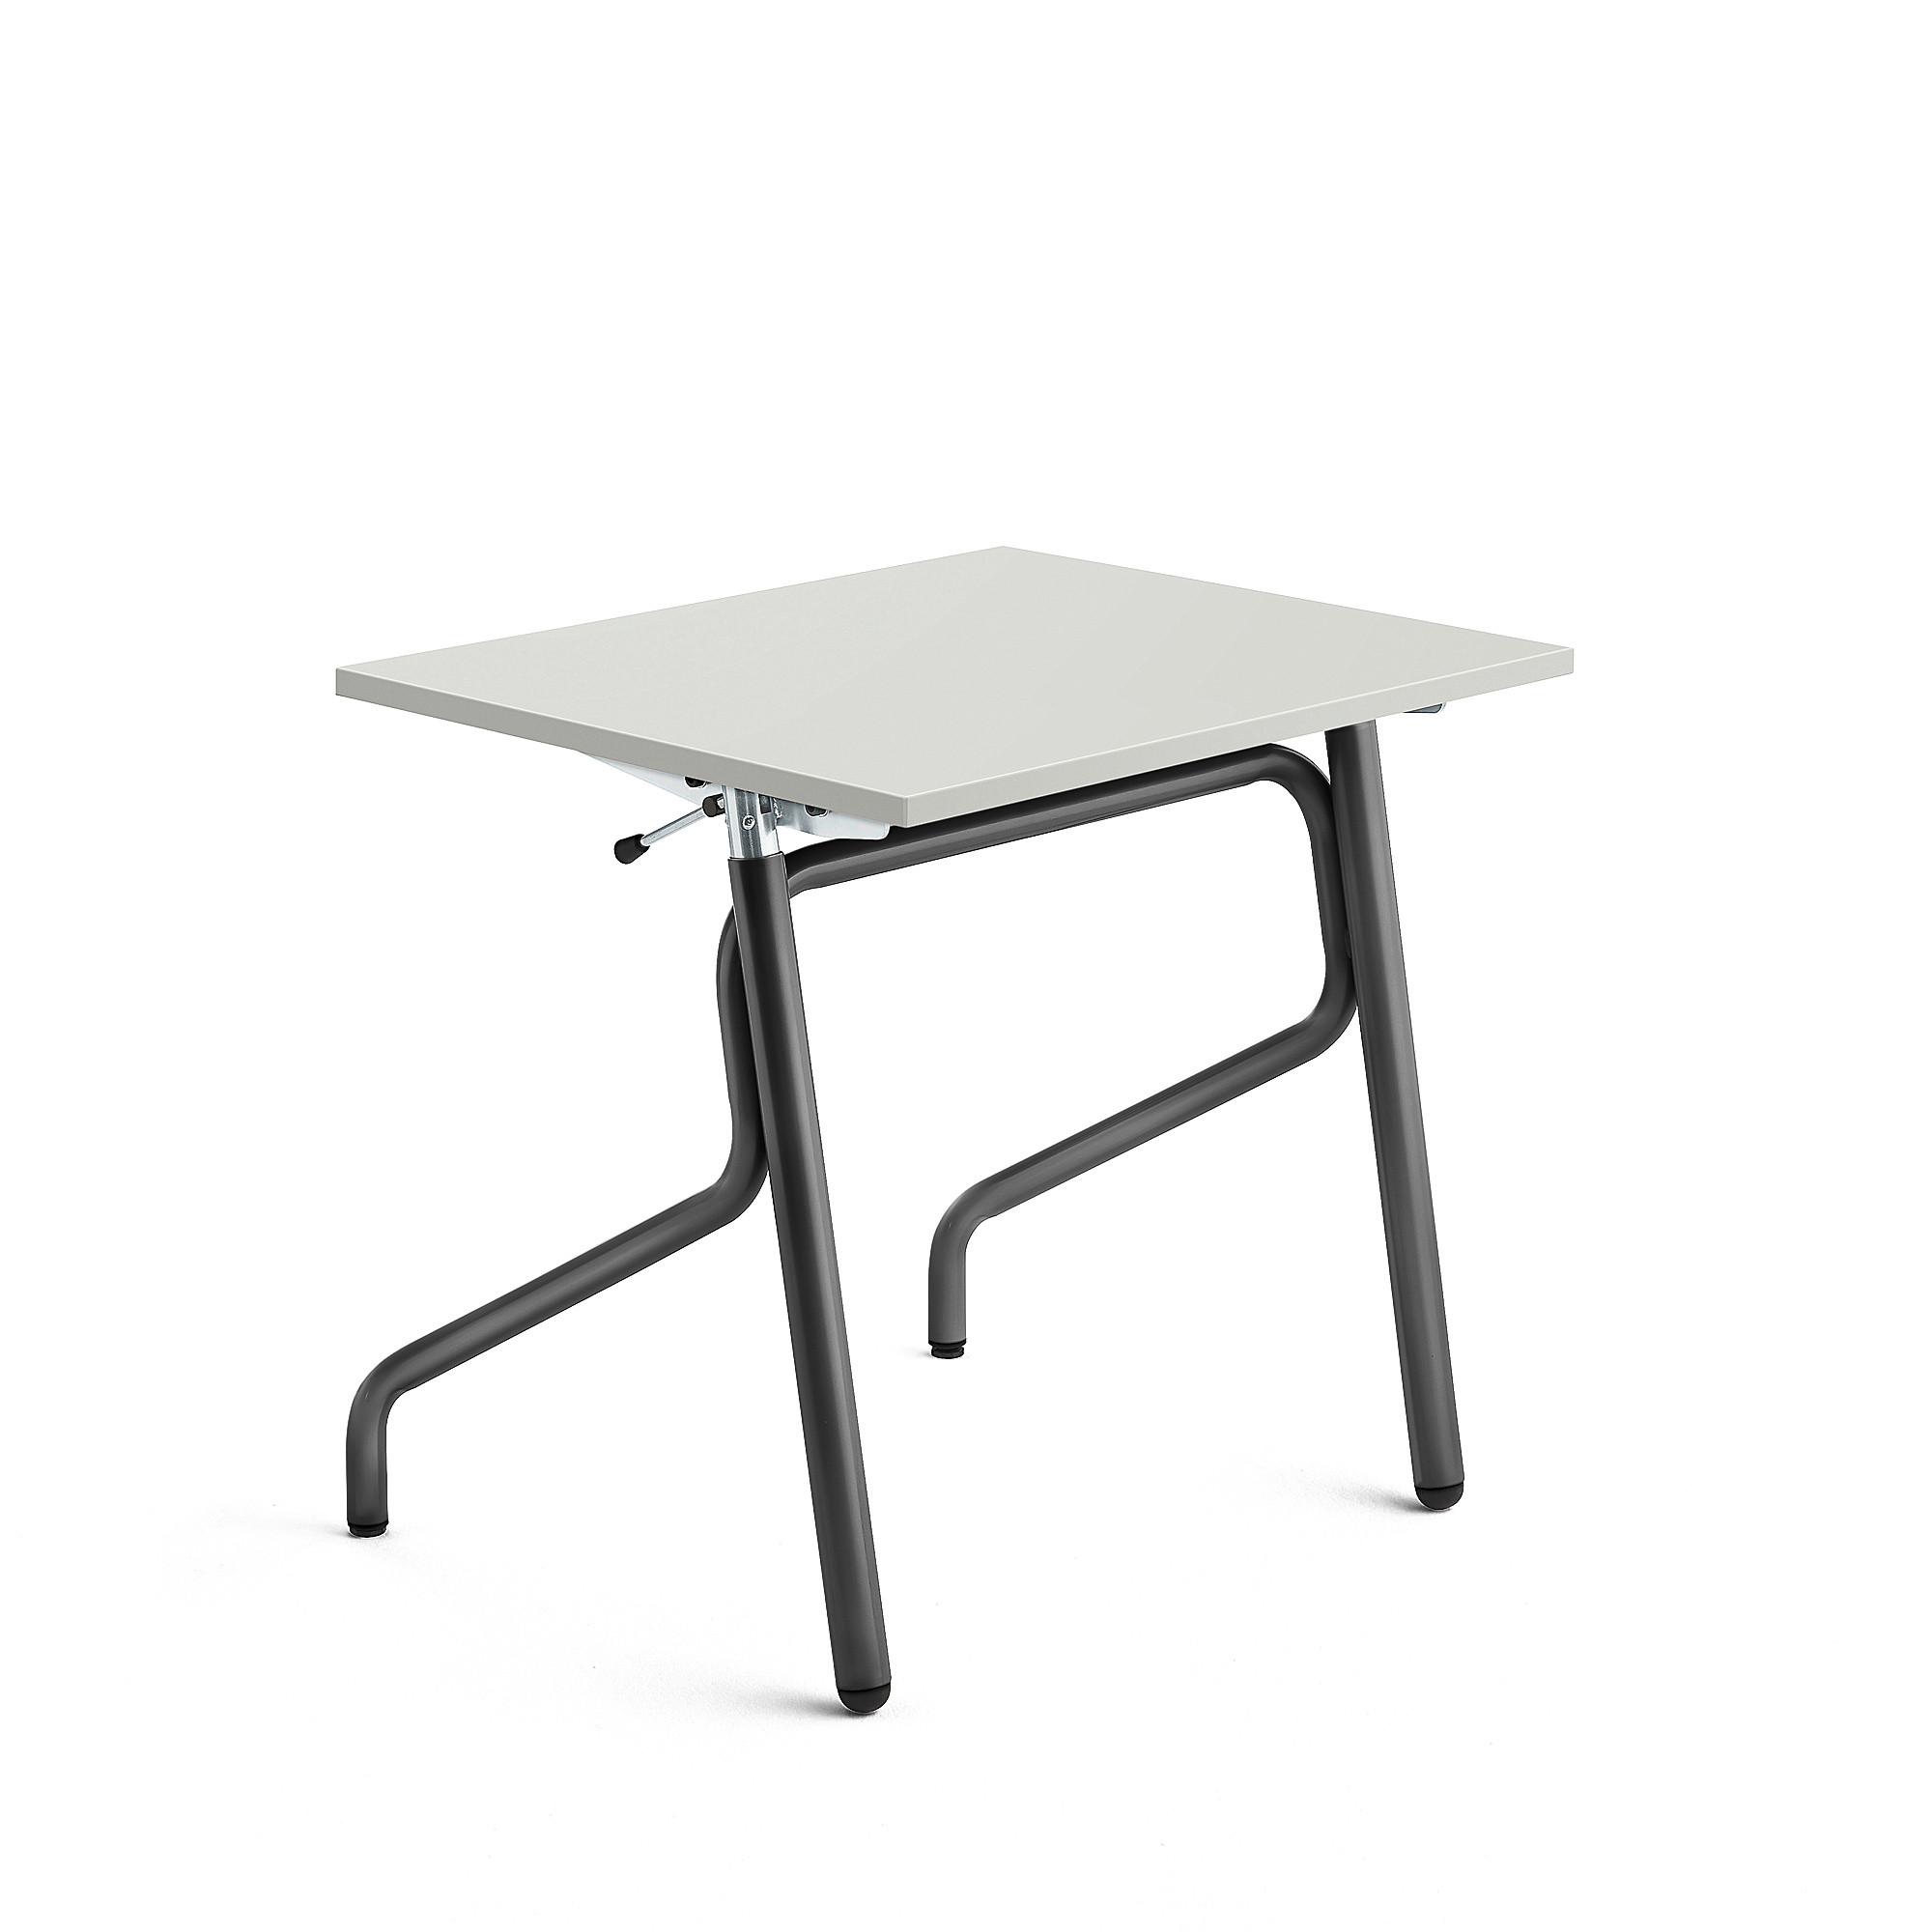 Školní lavice ADJUST, výškově nastavitelná, 700x600 mm, HPL deska tlumící hluk, šedá, antracitově še